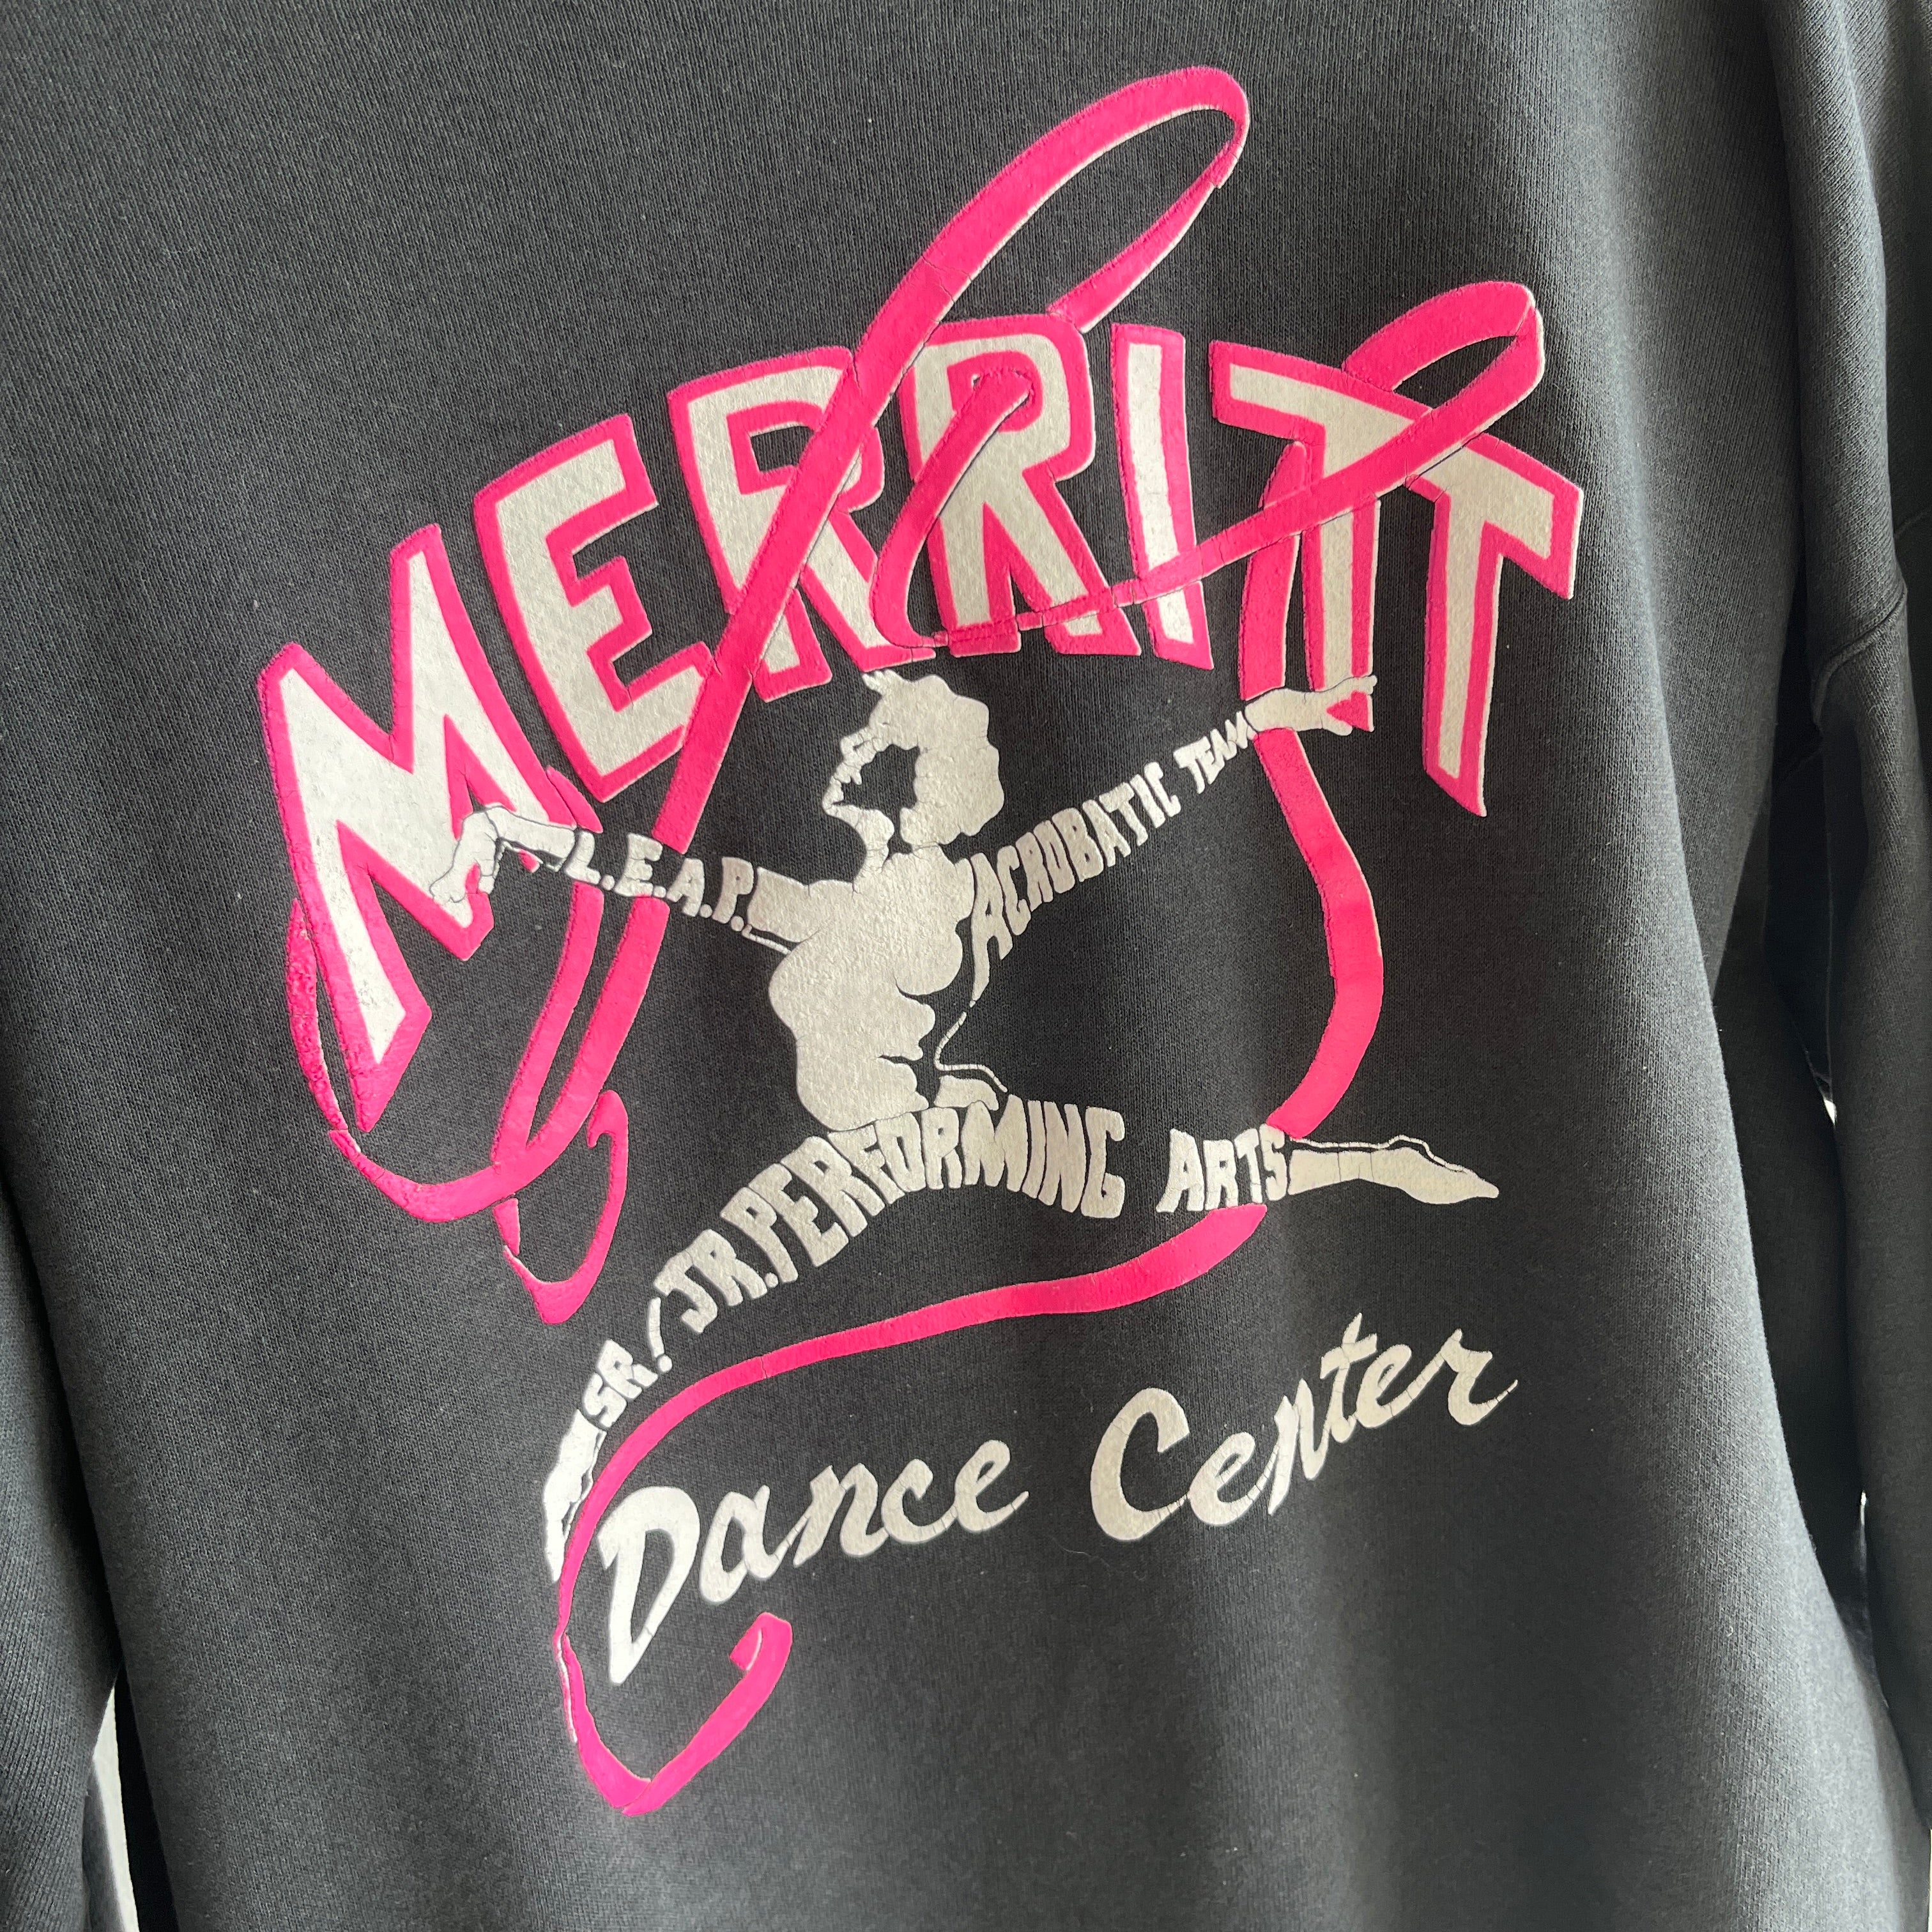 1990s Merritt Dance Center Acrobatic Team Sweatshirt !!!!!